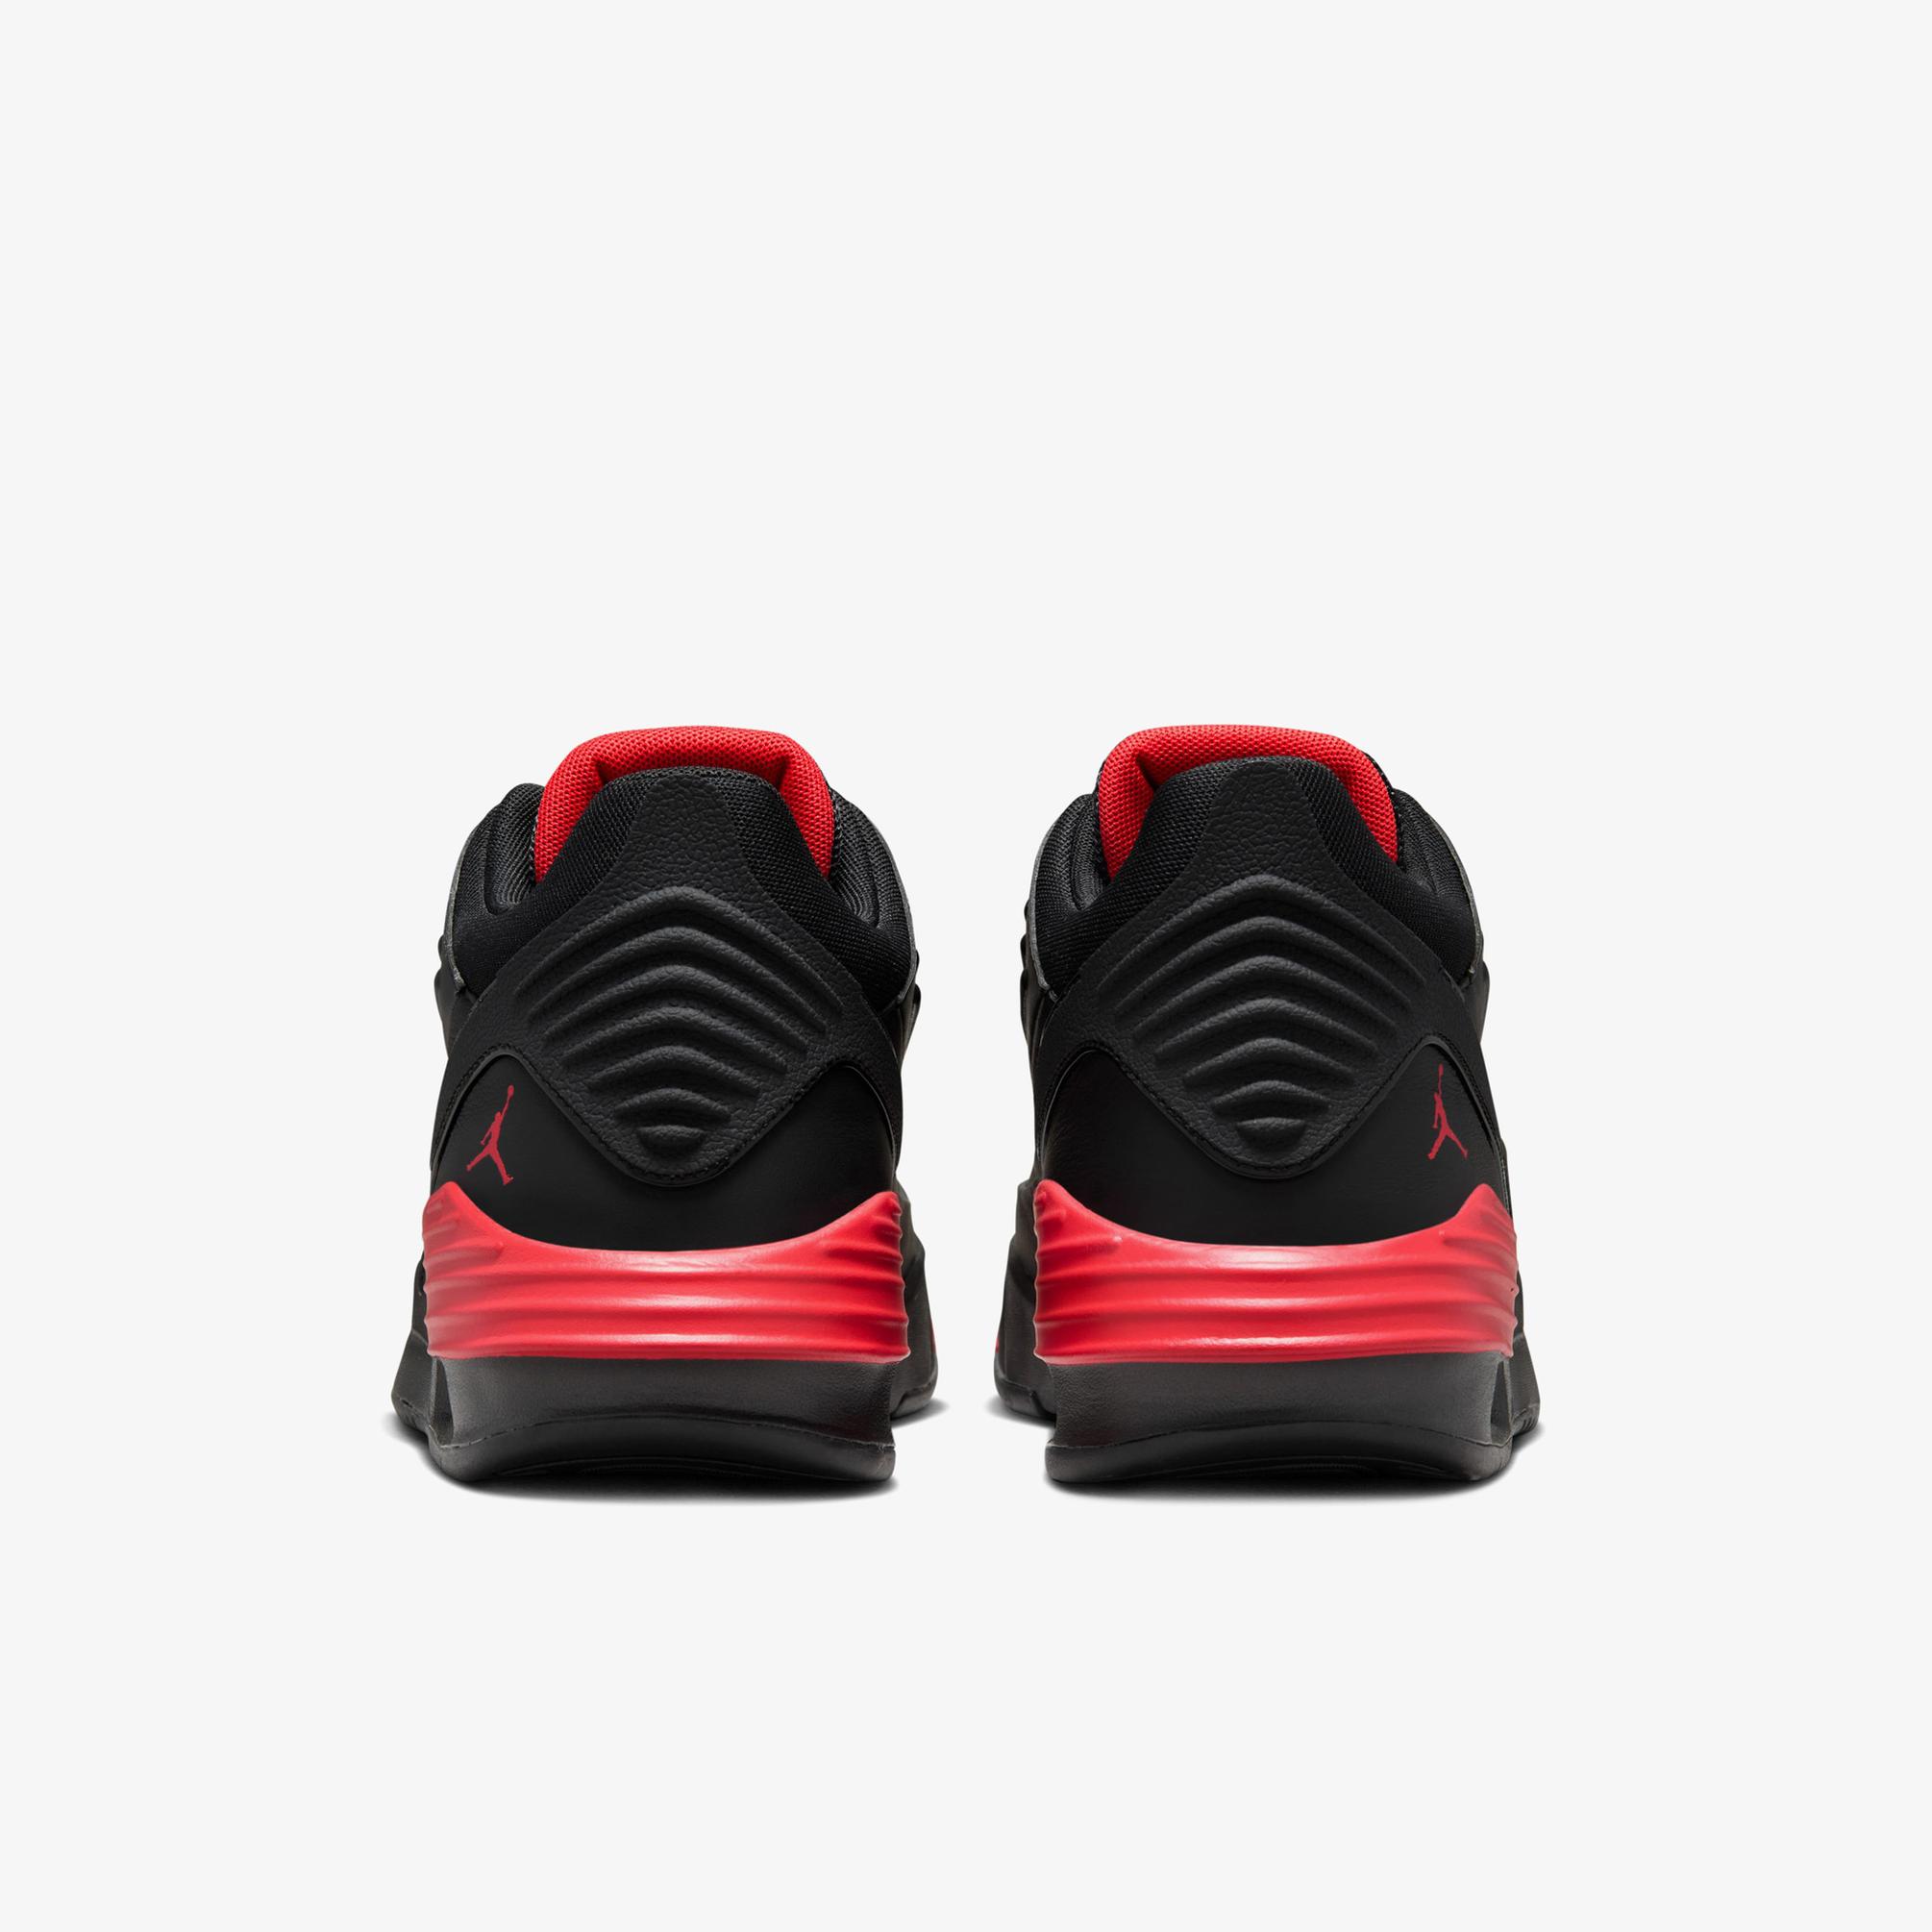  Jordan Max Aura 5 Erkek Siyah/Kırmızı Spor Ayakkabı